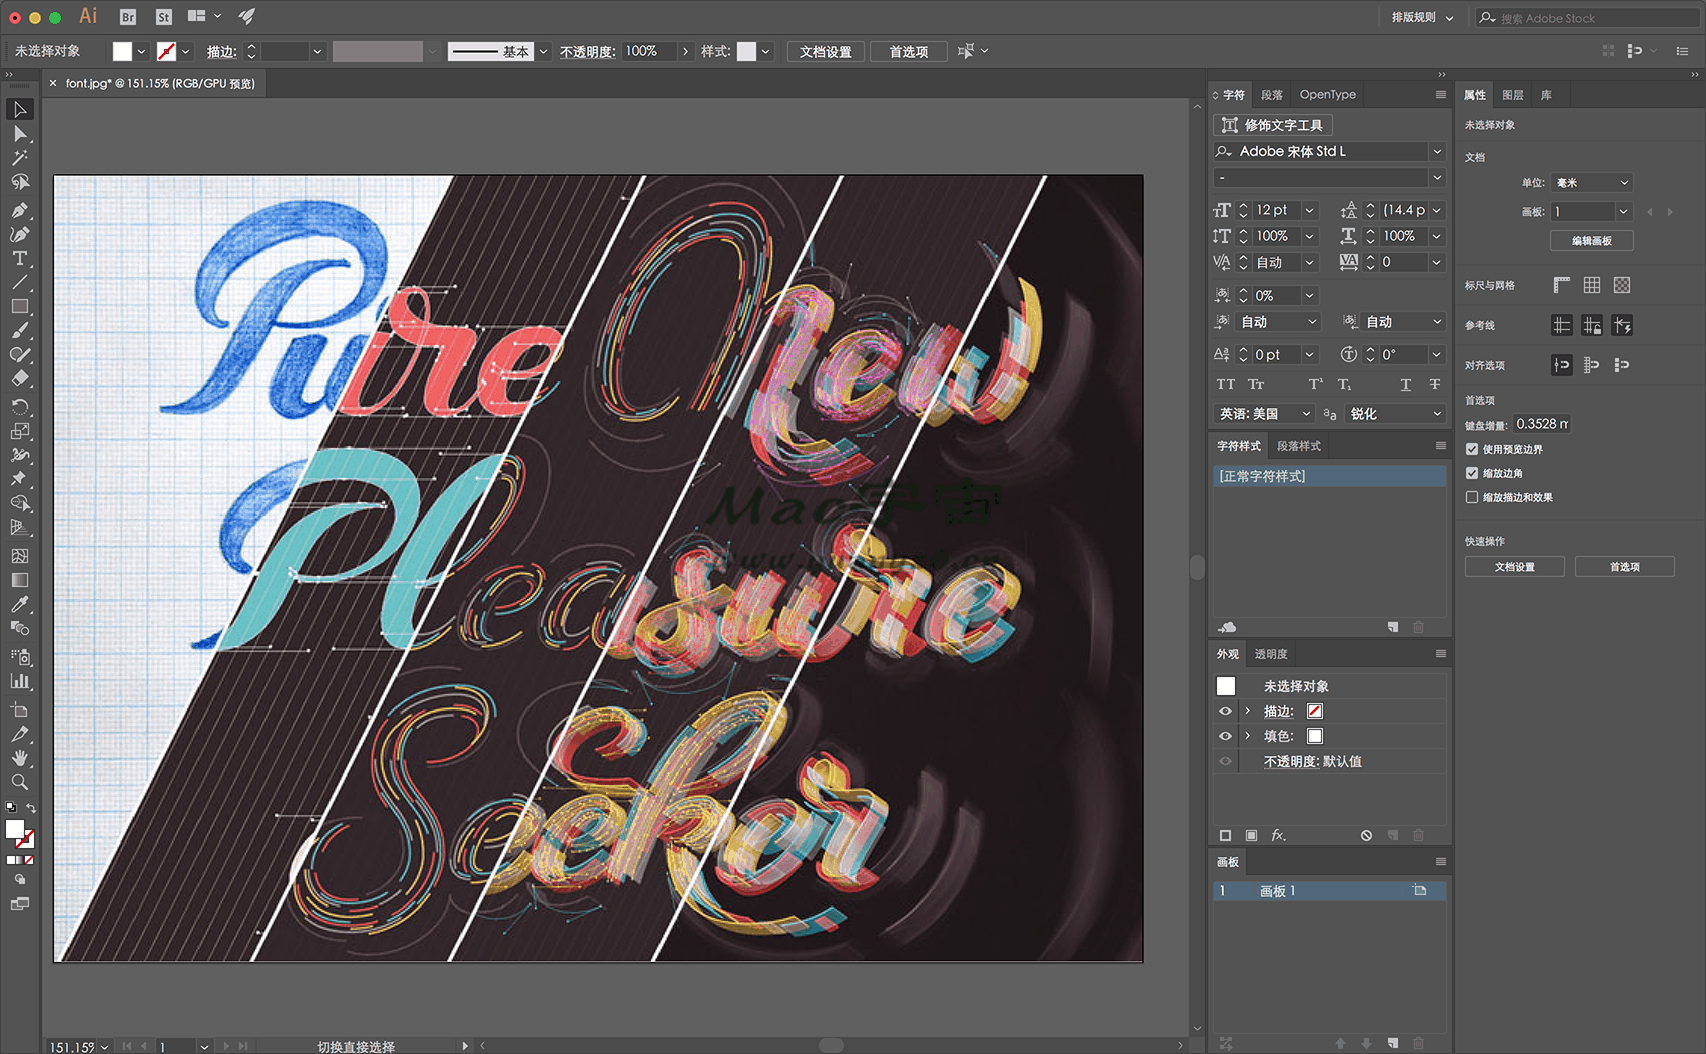 Adobe Illustrator 2022 for Mac v26.3.1 矢量图形设计软件 苹果电脑